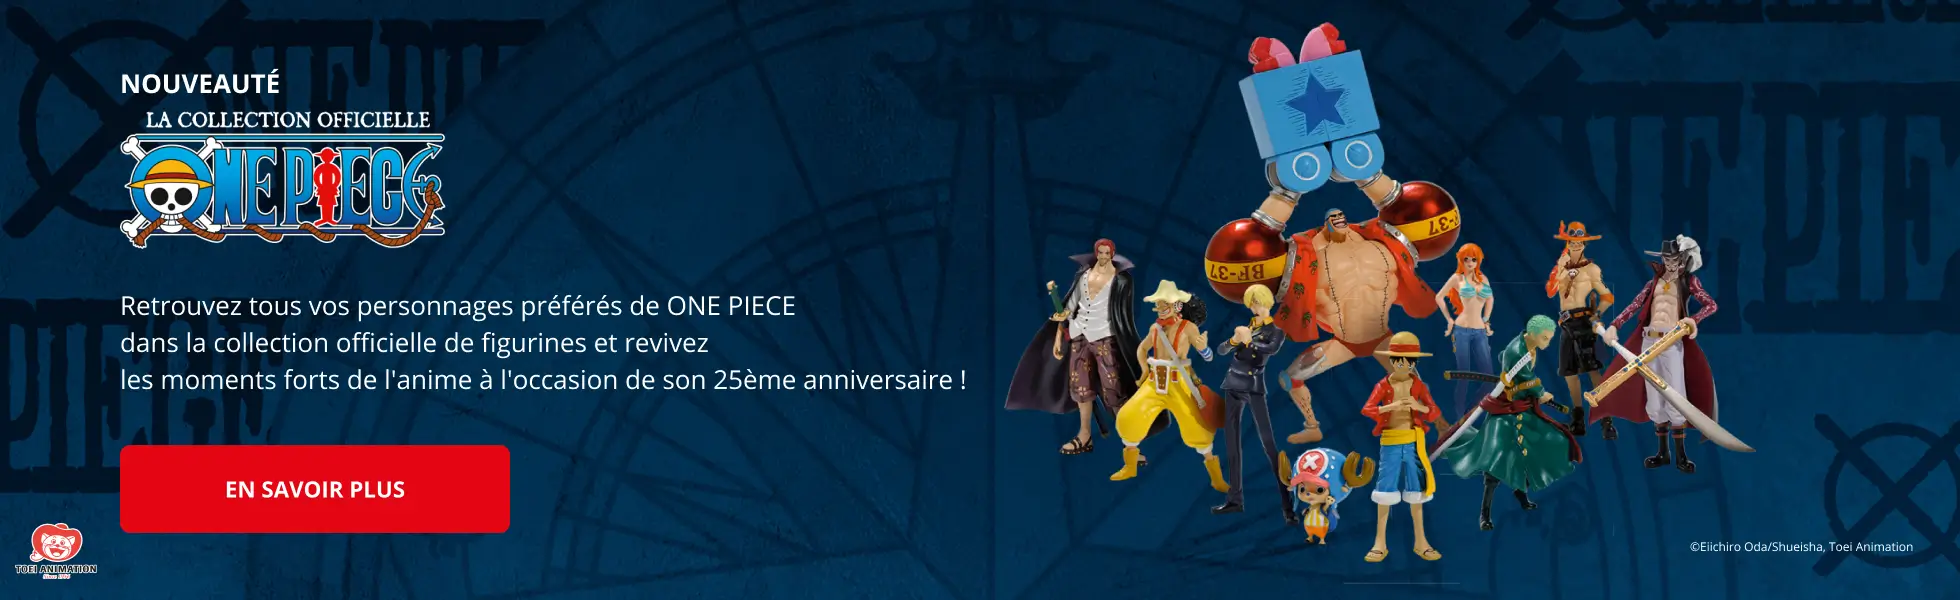 La collection officielle des figurines One Piece